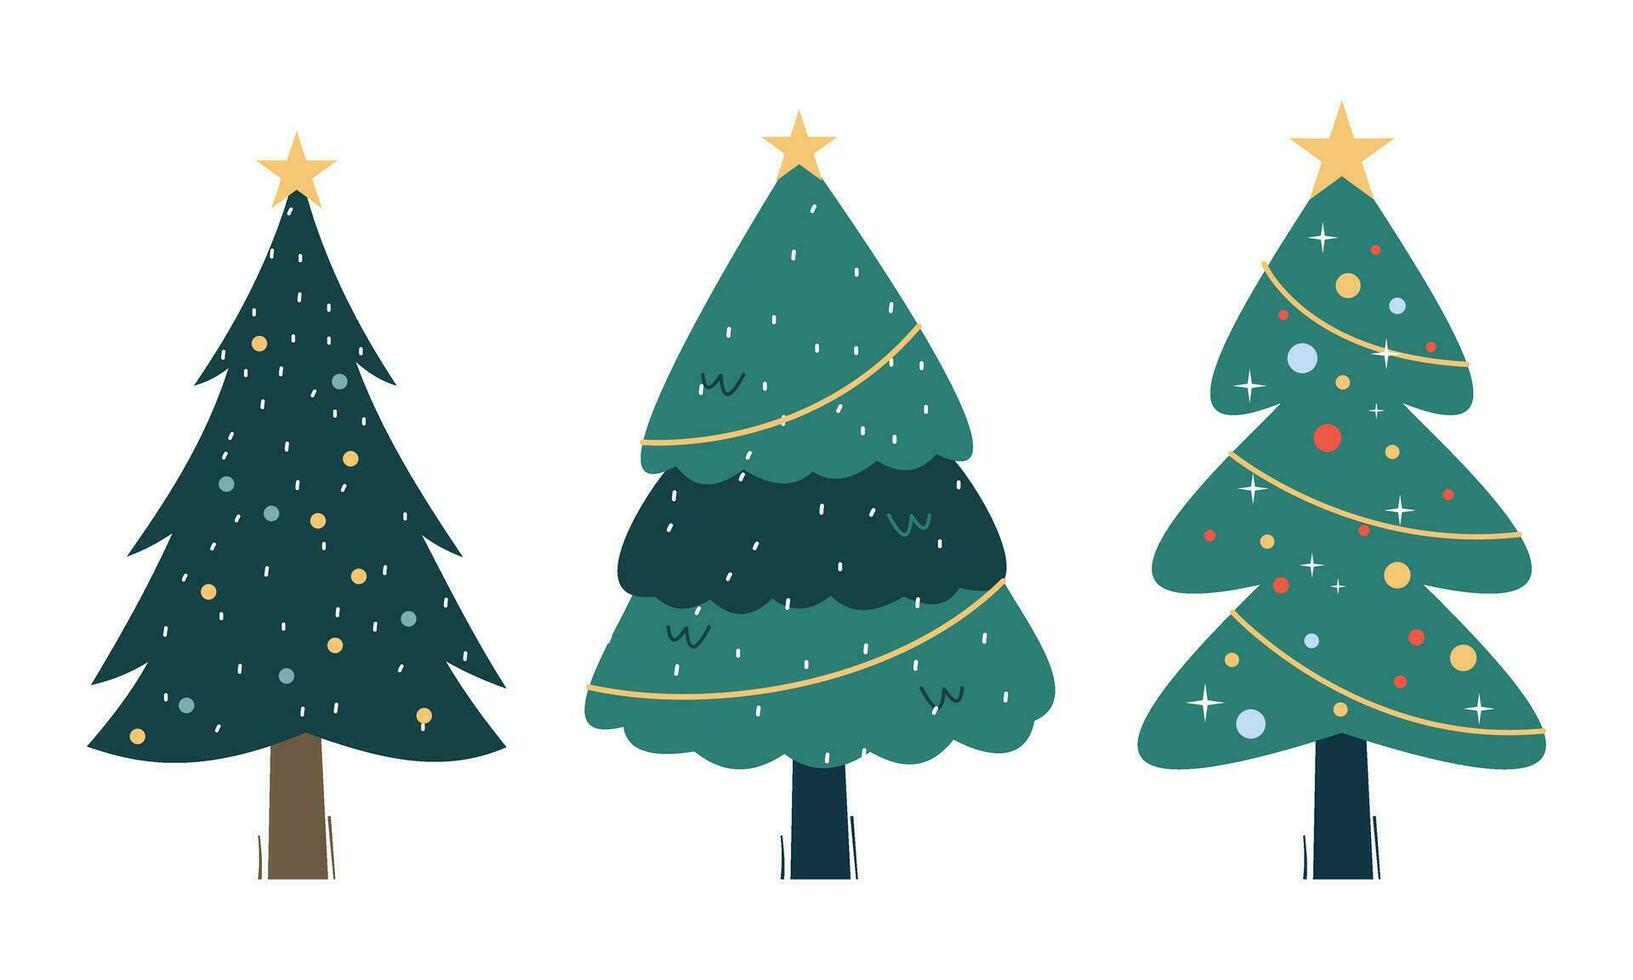 samling av jul träd med dekorationer. färgrik vektor illustration i platt tecknad serie stil